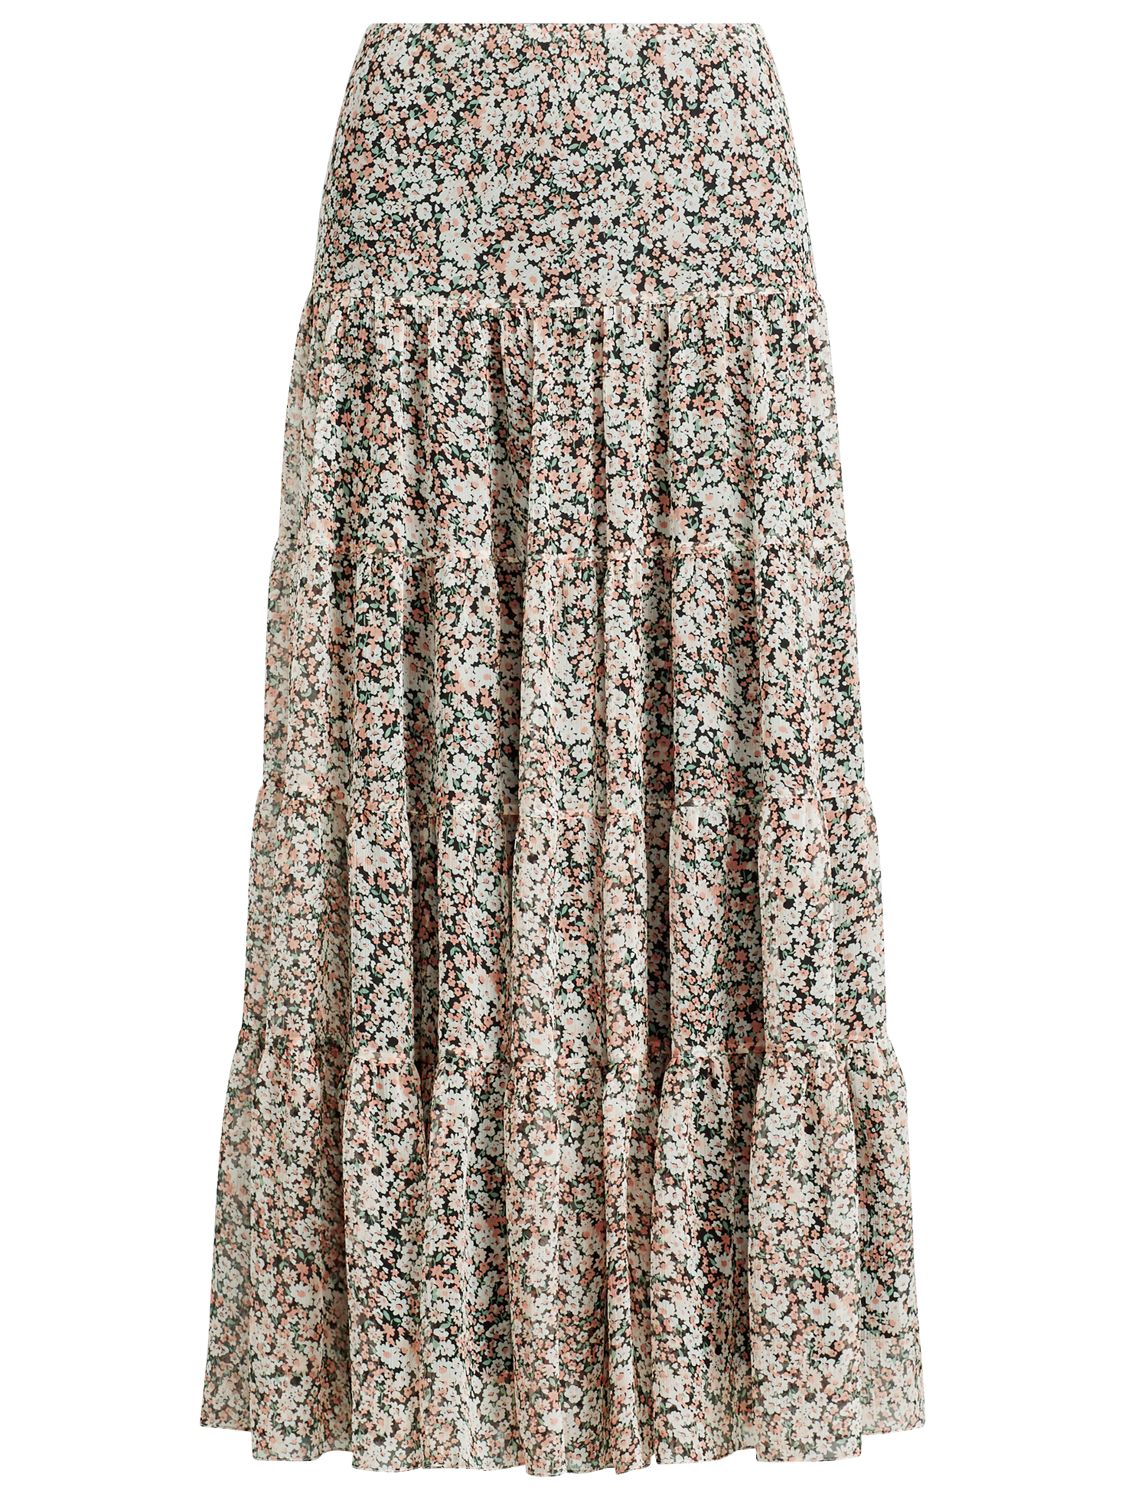 Lauren Ralph Lauren Moriah Floral Tiered Ruffle Maxi Skirt, Pink/Multi ...